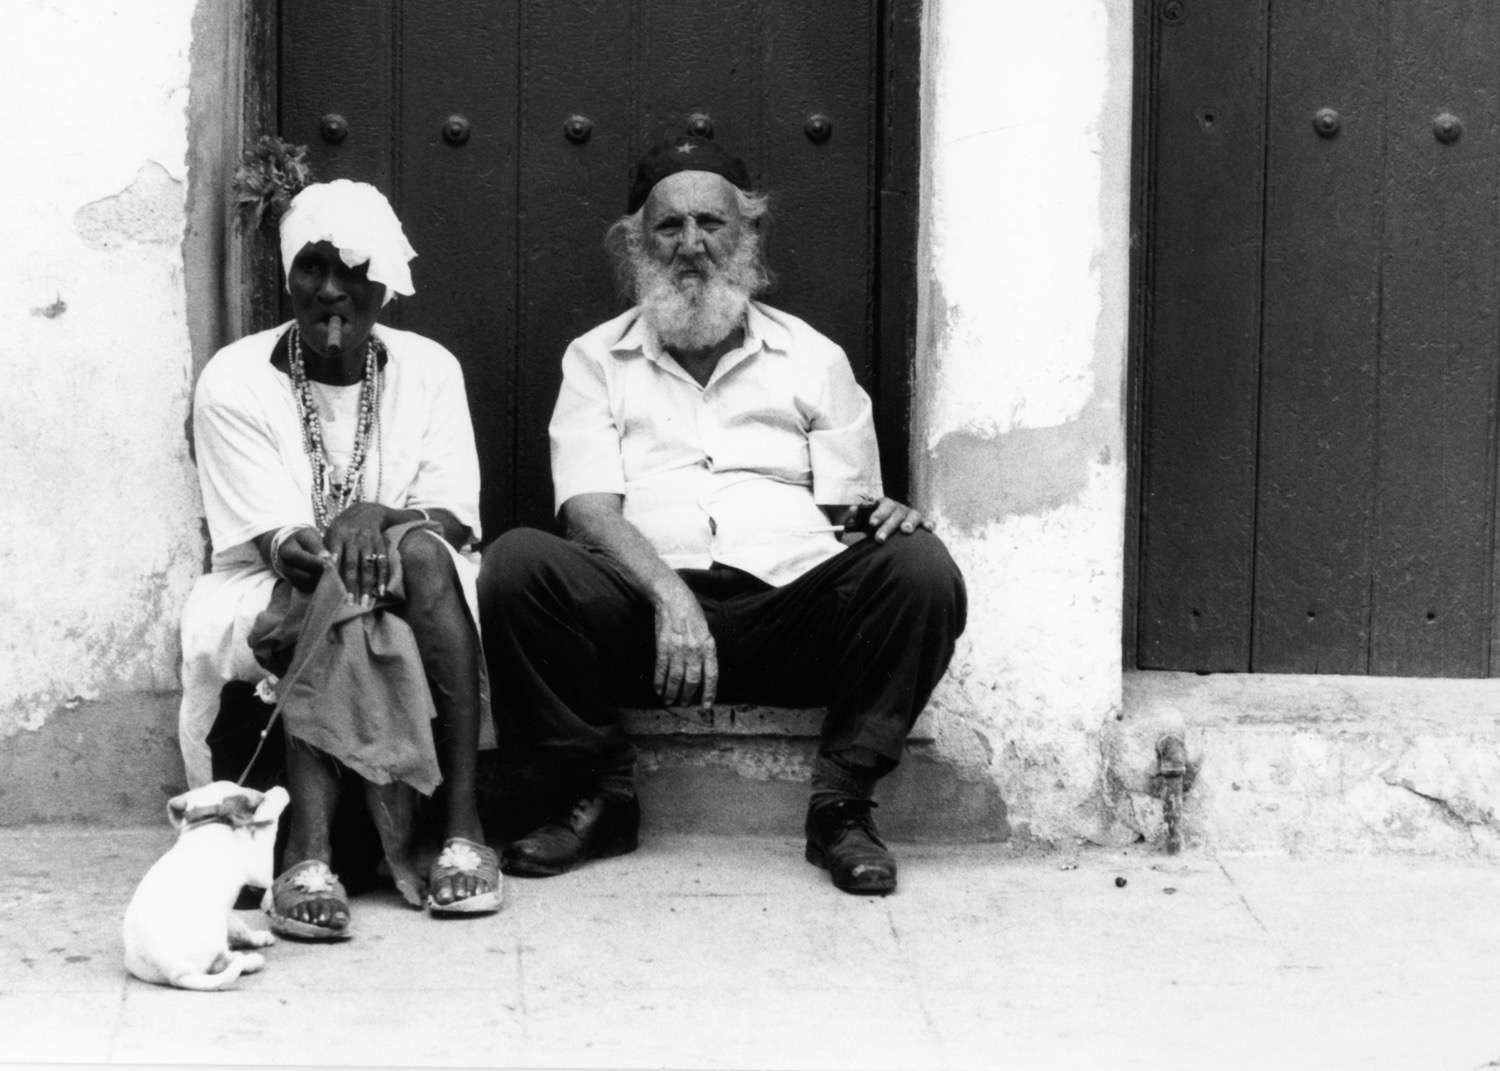 Cuba_woman-cigar-and-old-man-hat-Cuba168.jpg